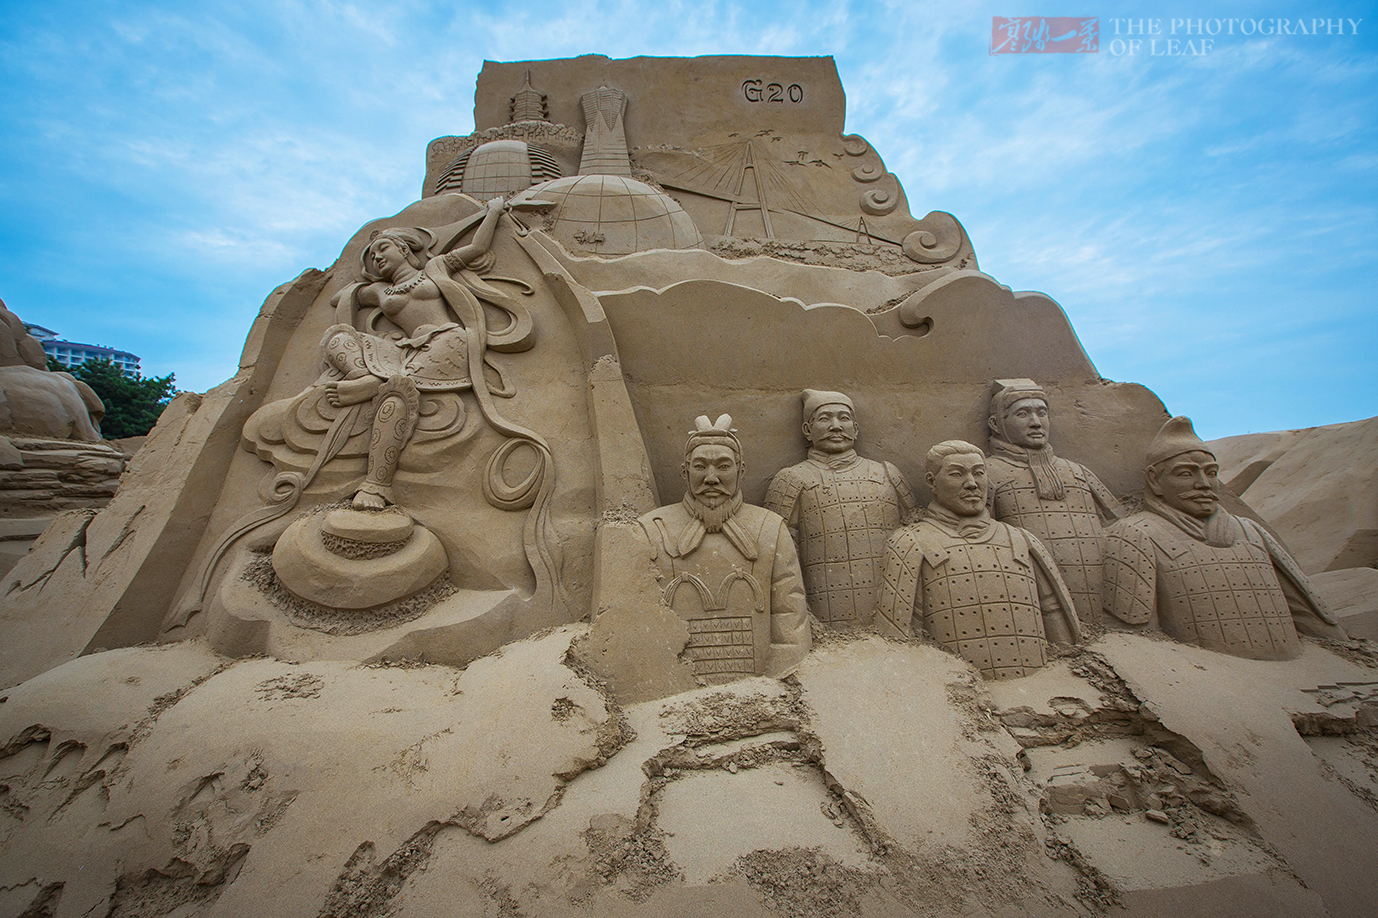 图片素材 : 砂, 岩, 雕像, 狮子, 材料, 艺术品, 雕塑, 寺庙, 雕刻, 沙雕, 沙图片, sandworld, 古代历史 ...